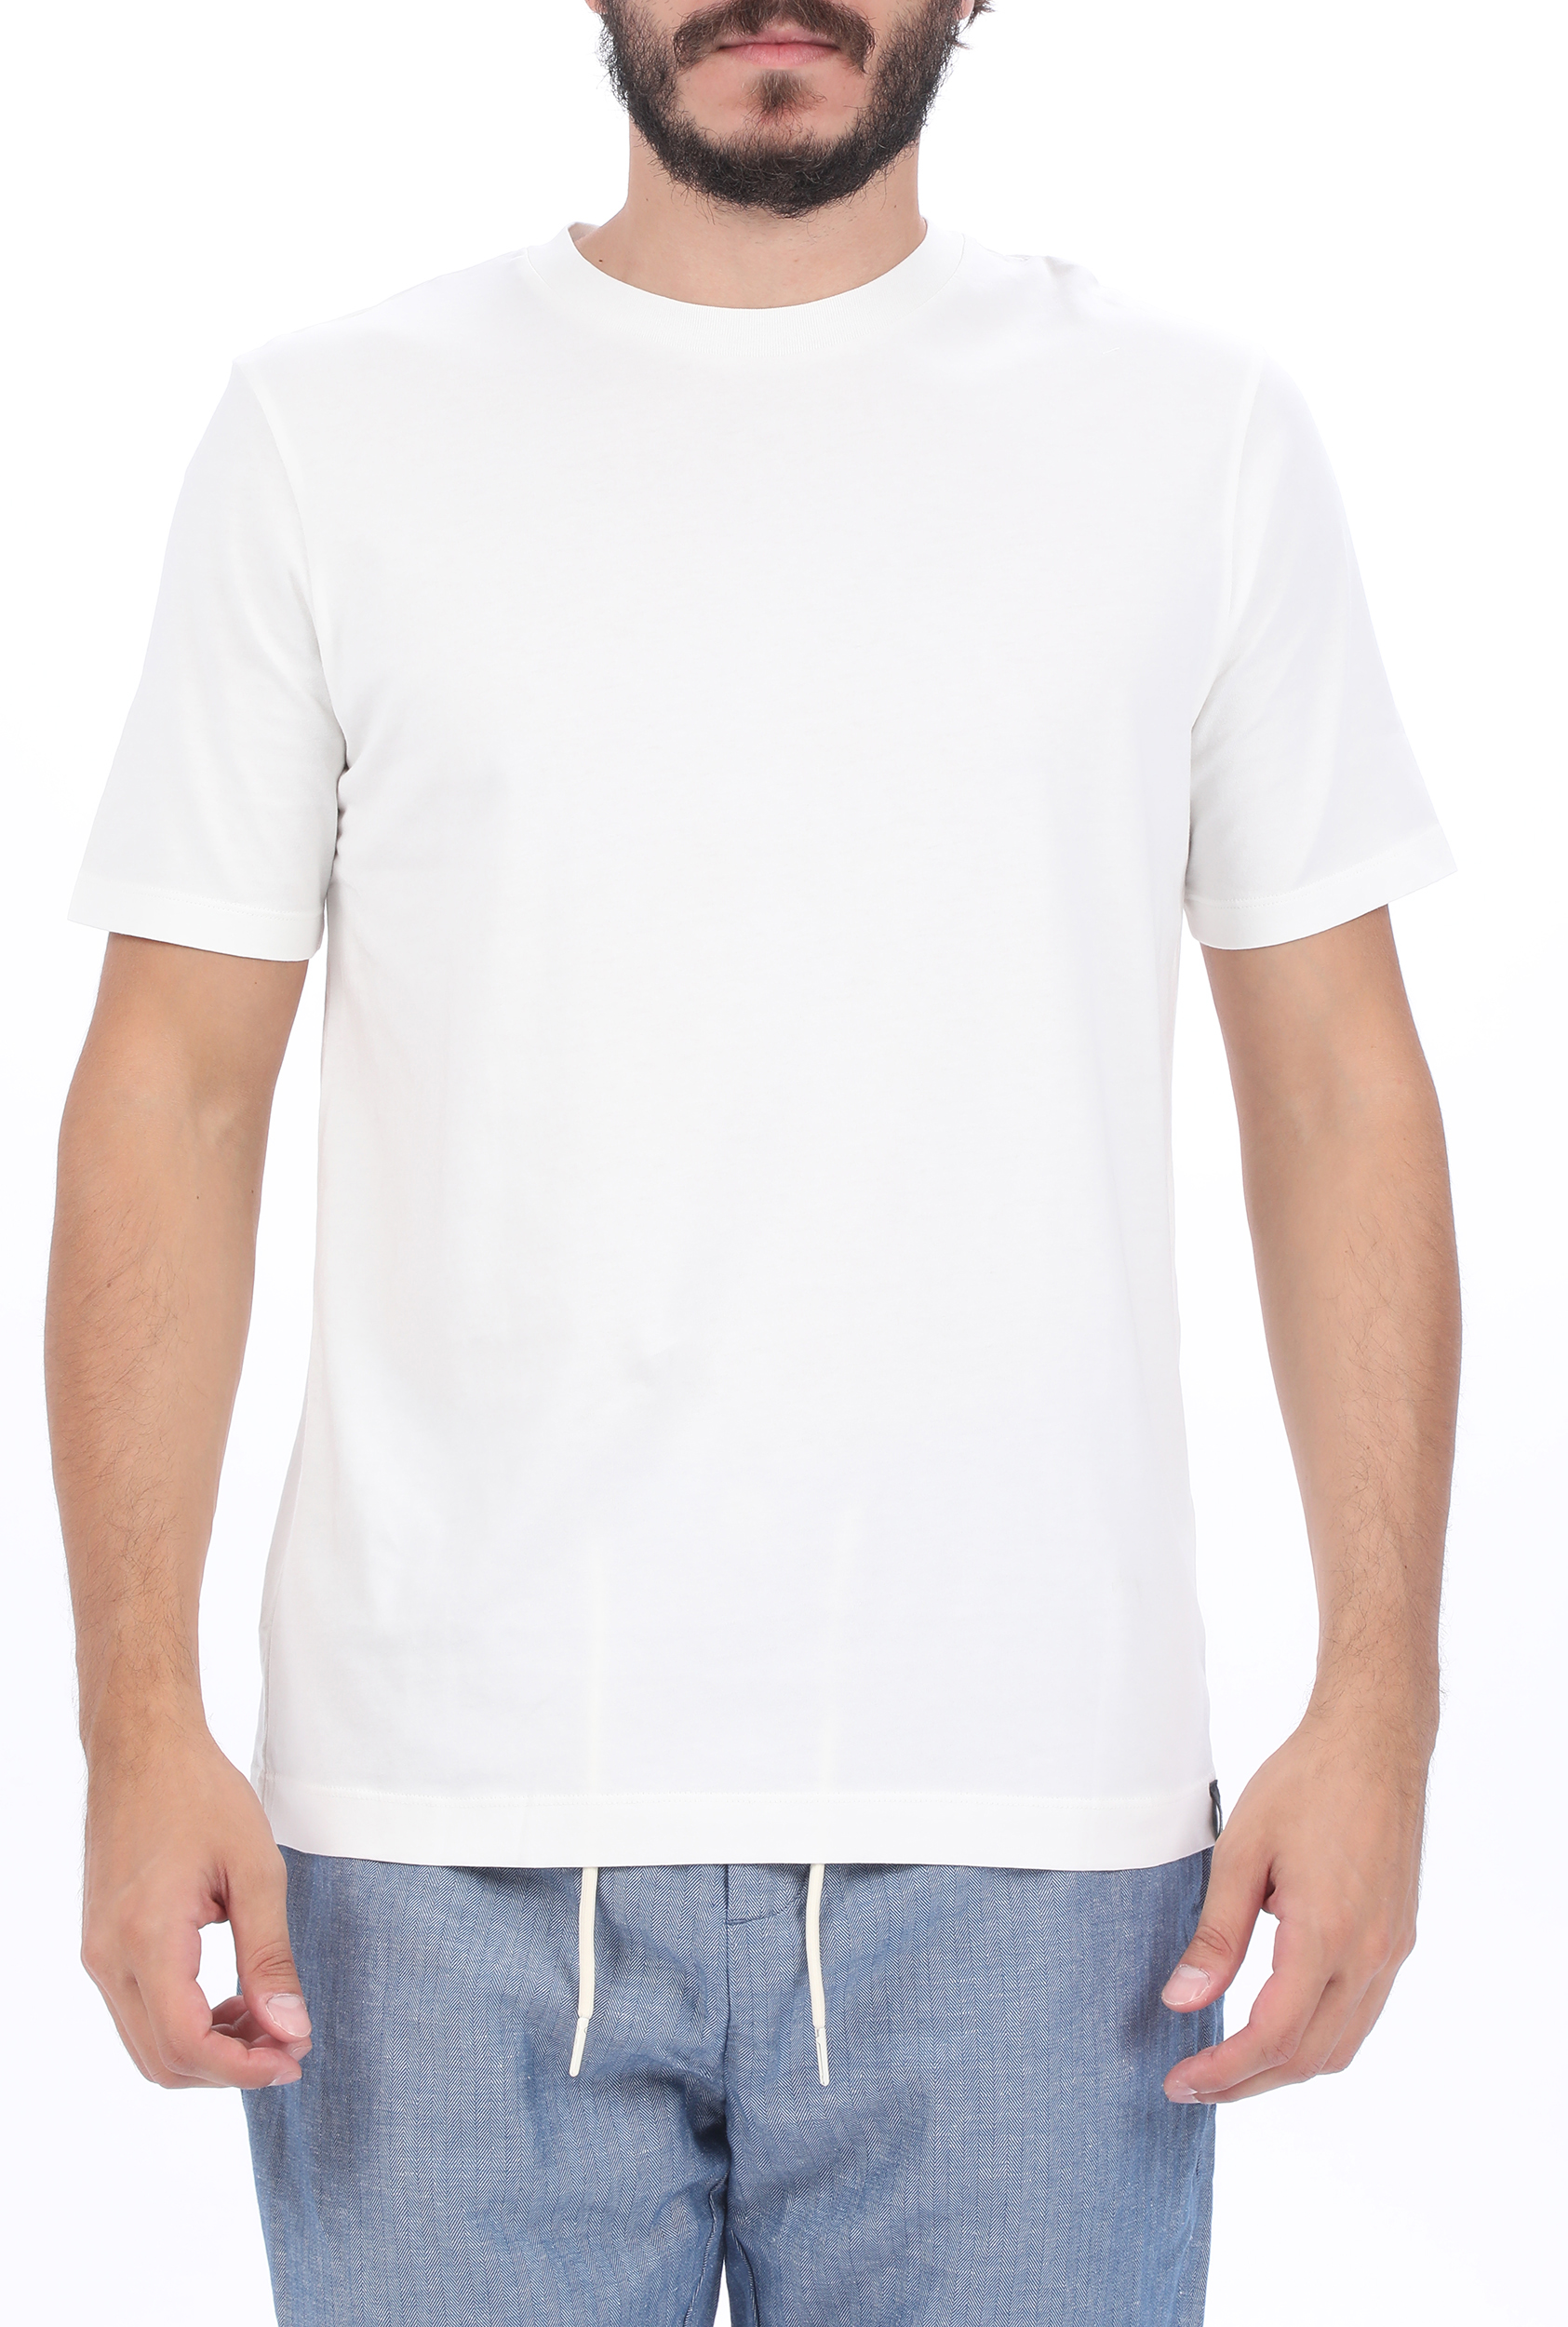 Ανδρικά/Ρούχα/Μπλούζες/Κοντομάνικες SCOTCH & SODA - Ανδρικό t-shirt SCOTCH & SODA Classic solid organic cotton λευκό